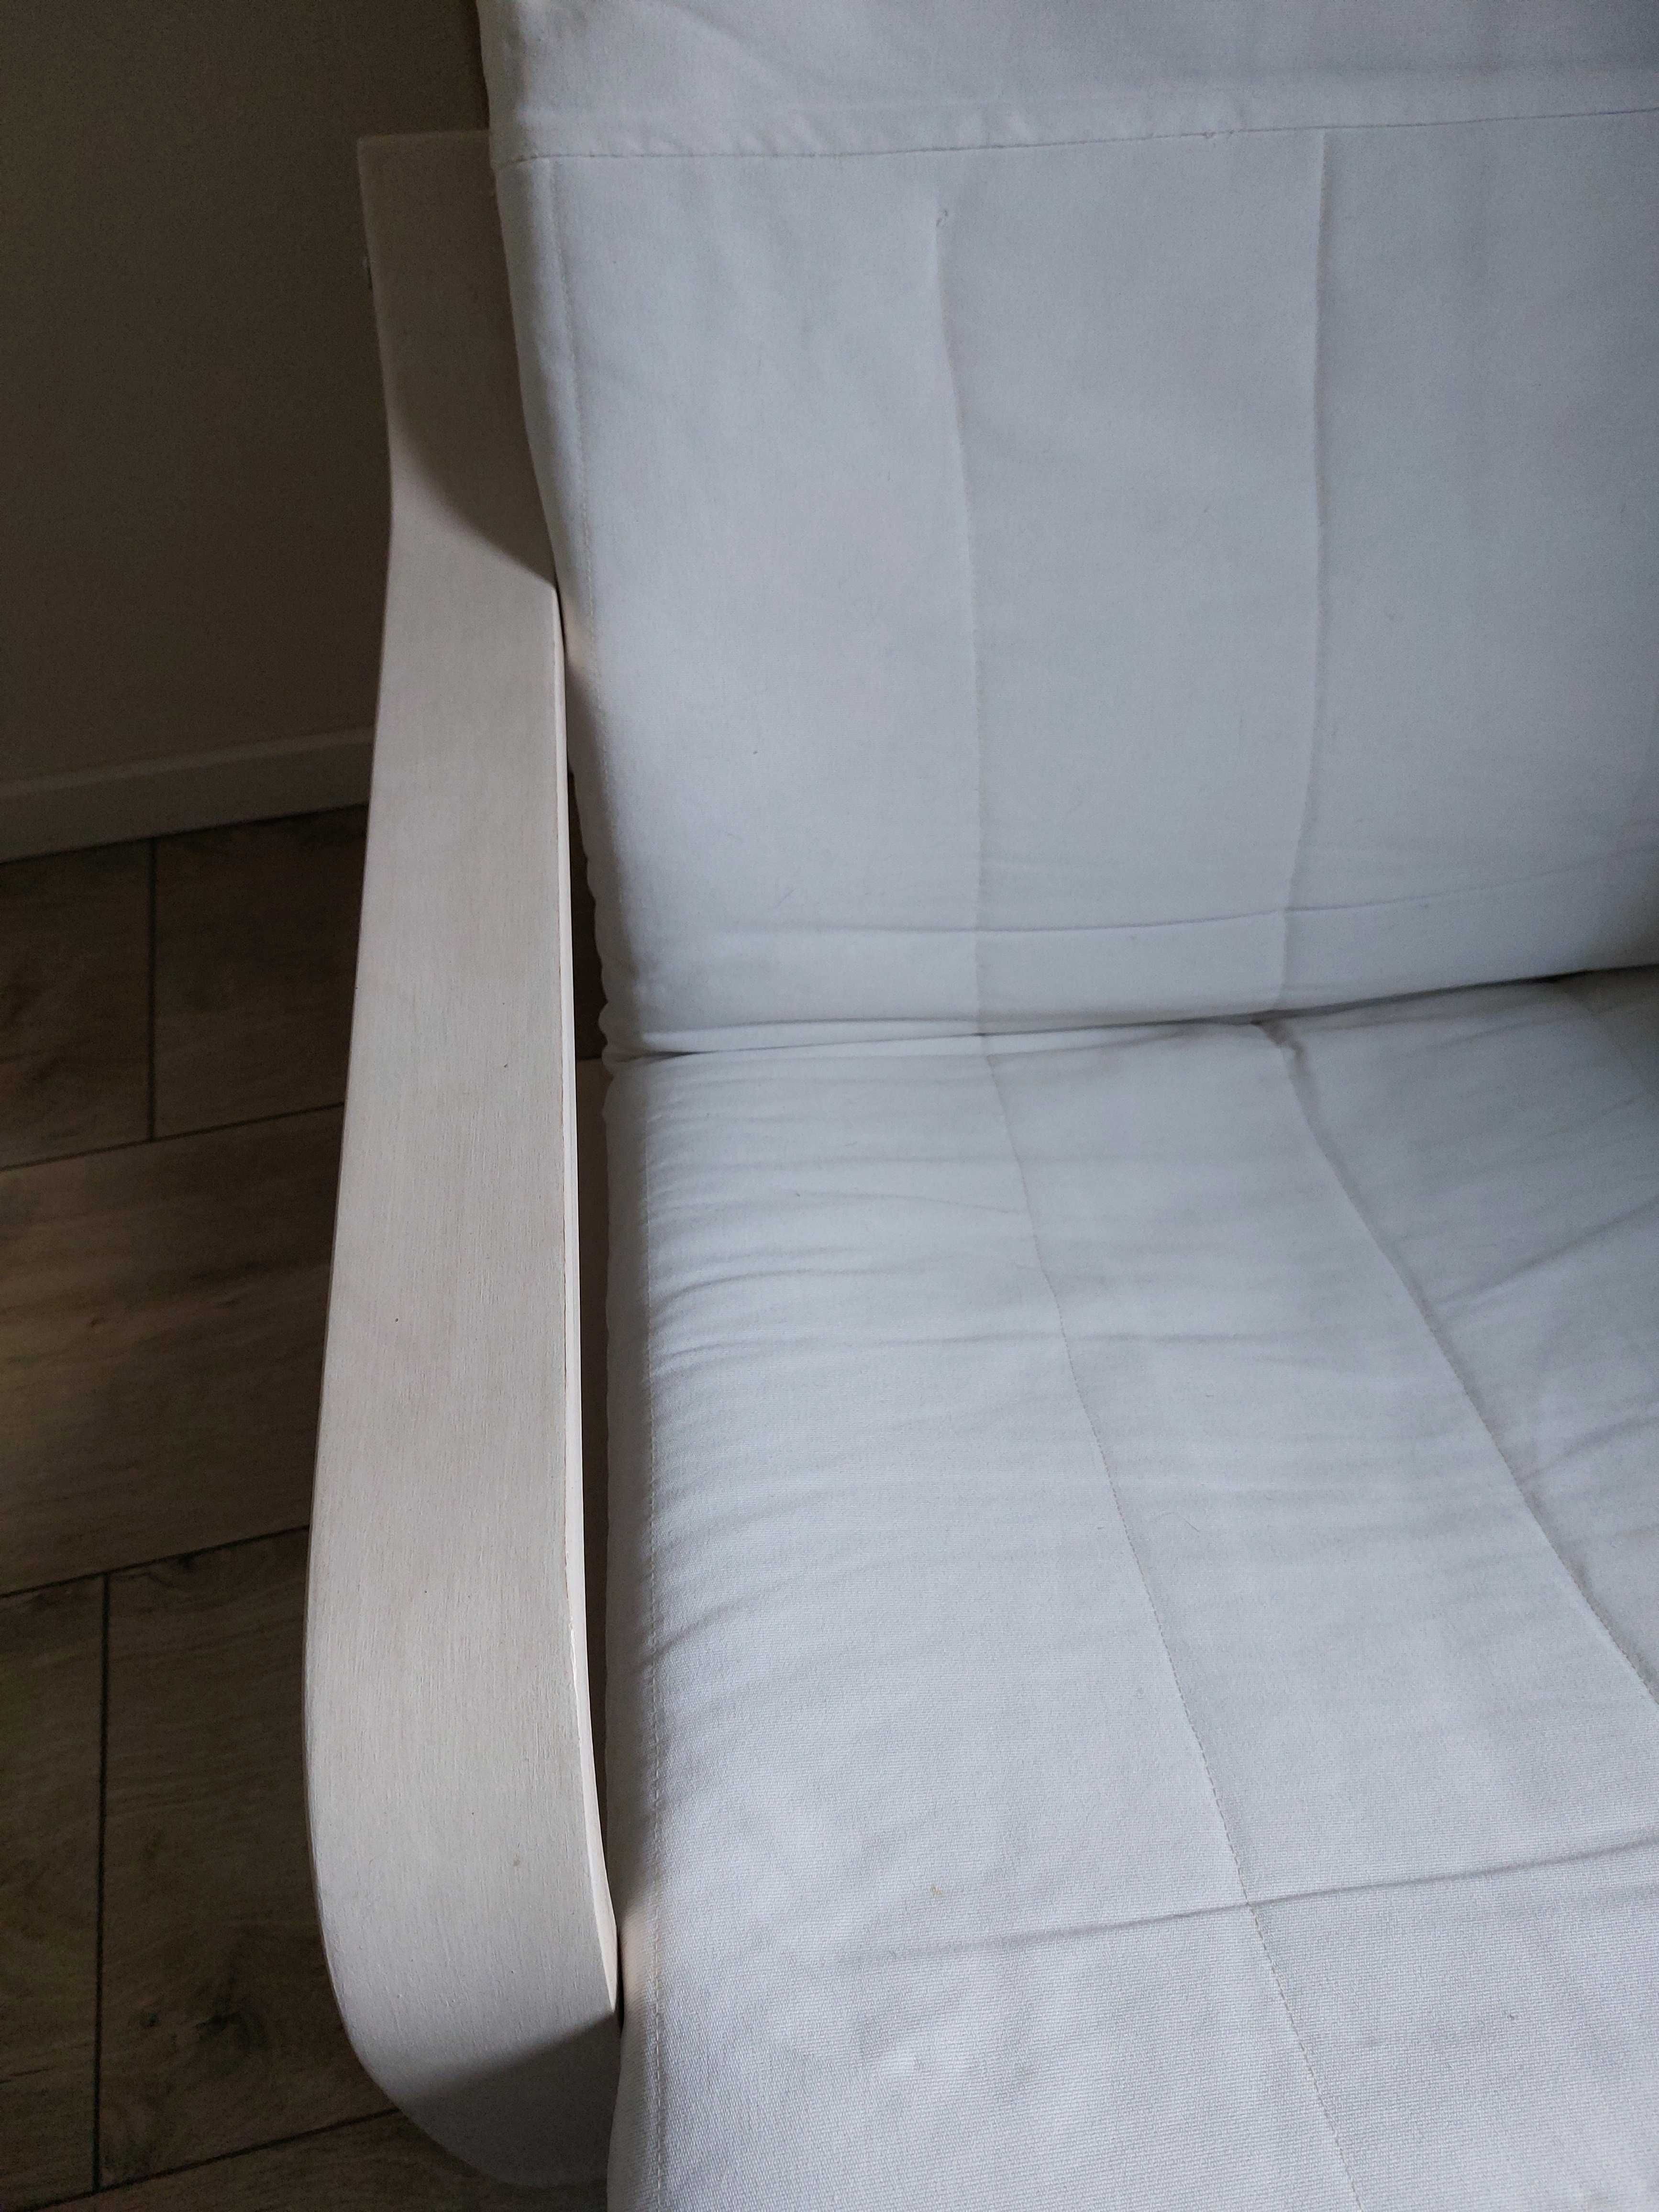 Fotel Ikea Poang w okleinie dębowej  przecierany białą bejcą